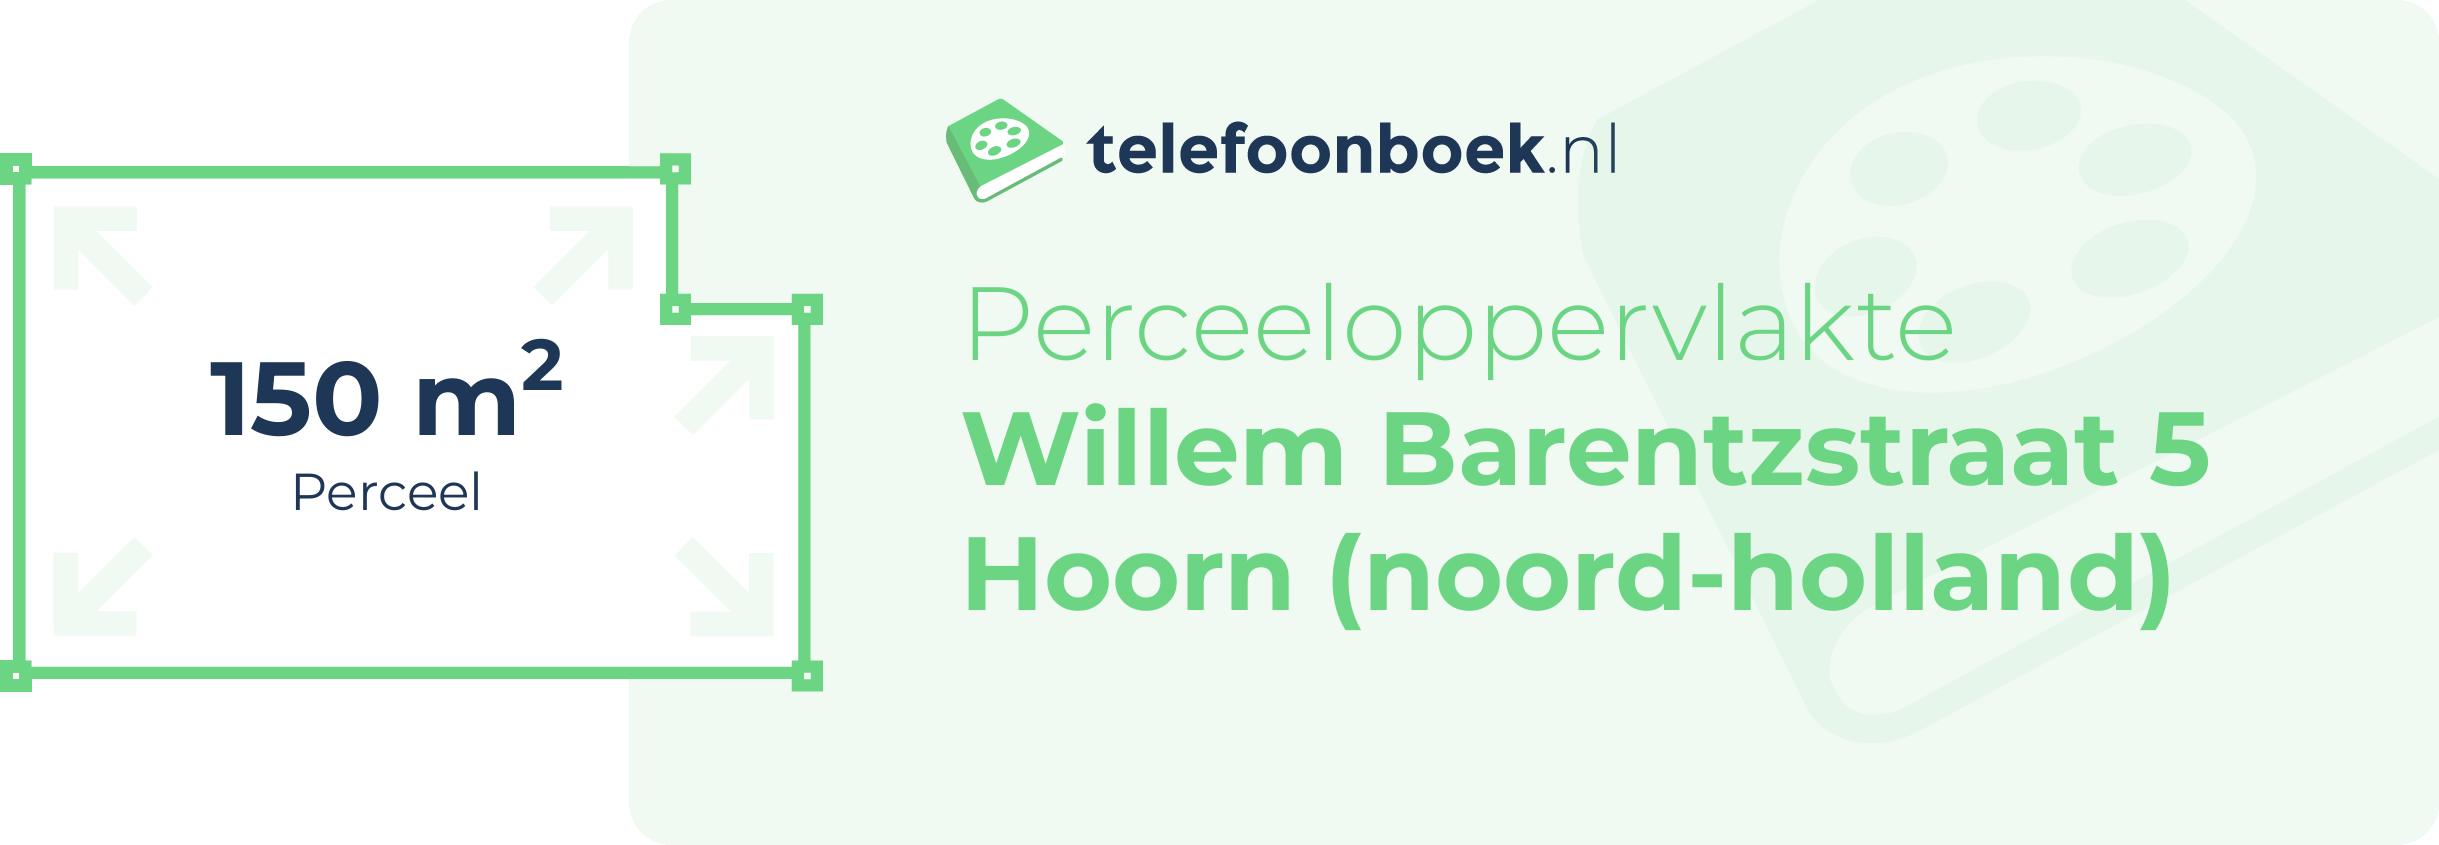 Perceeloppervlakte Willem Barentzstraat 5 Hoorn (Noord-Holland)